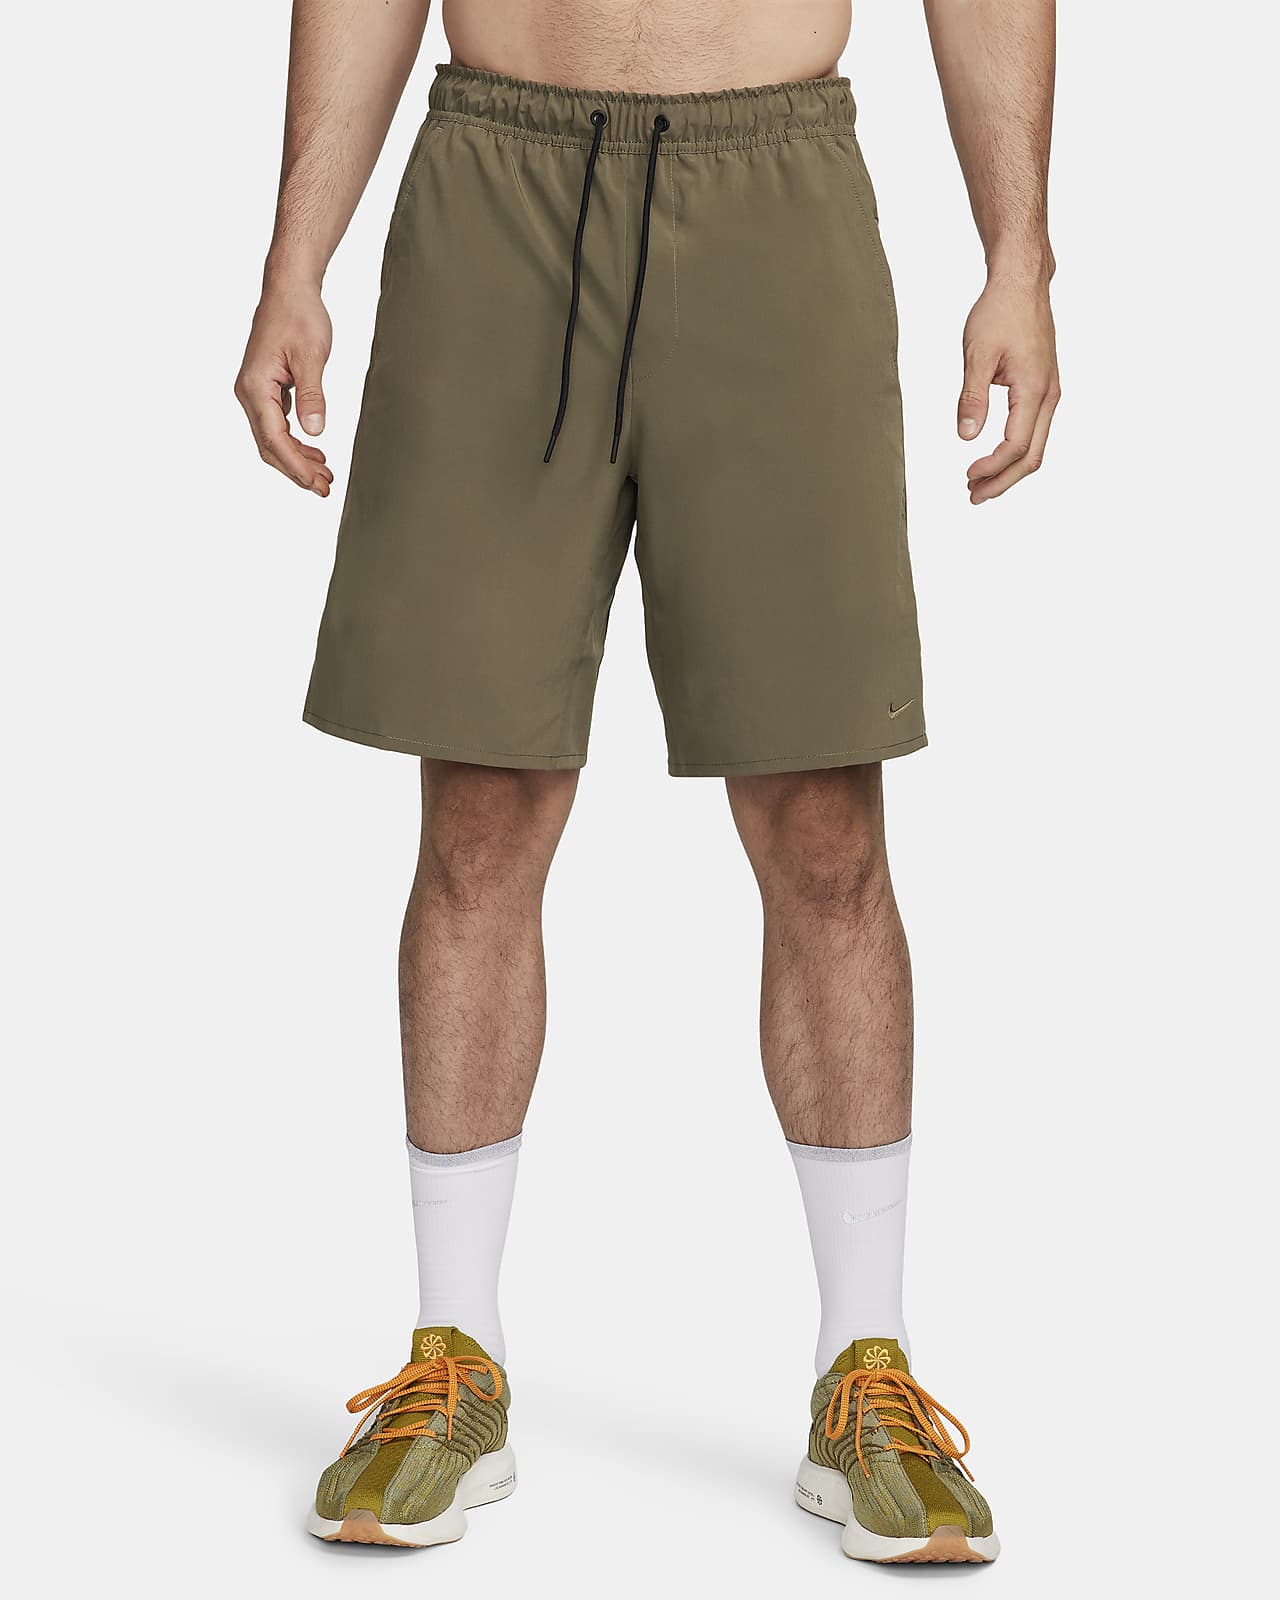 Nike Unlimited Men's Dri-FIT 9" Unlined Versatile Shorts